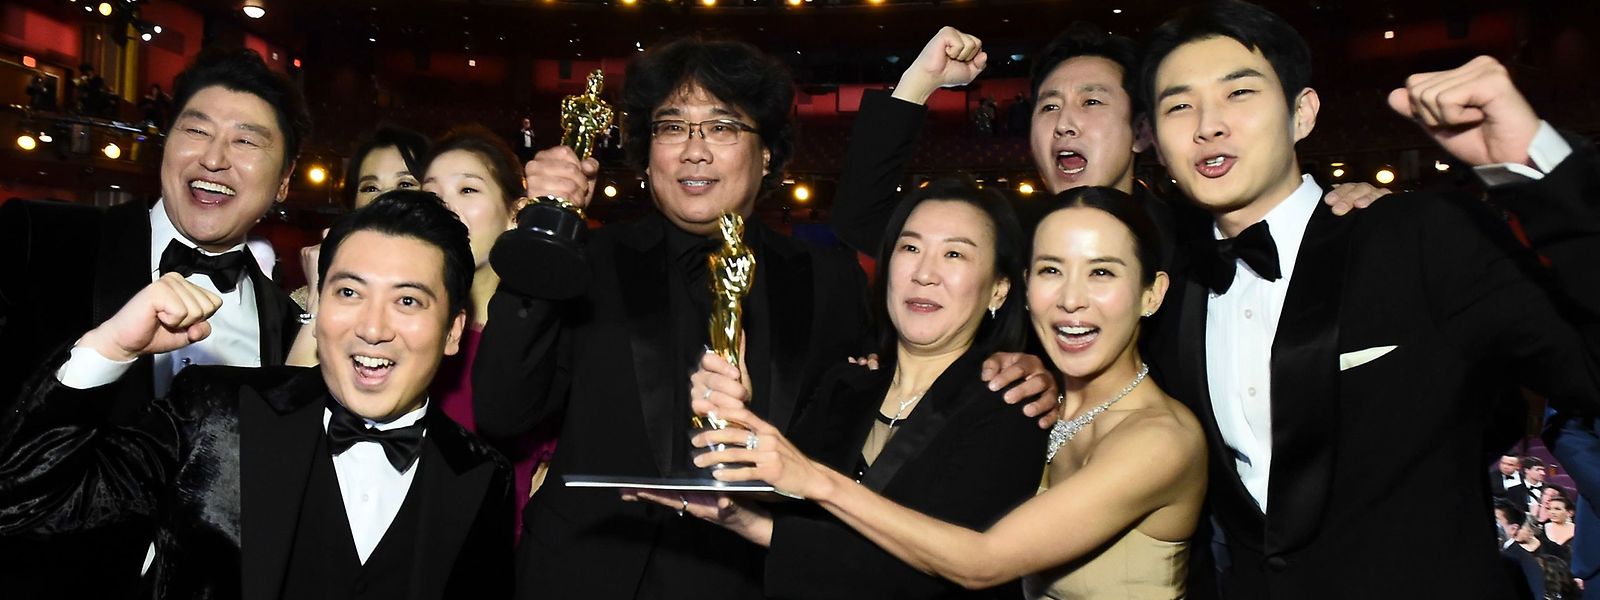 Riesige Freude für koreanische Filmproduktion: Regisseur und Produzent Bong Joon-Ho mit Schauspielern und Filmcrew nach der Oscar-Verleihung.